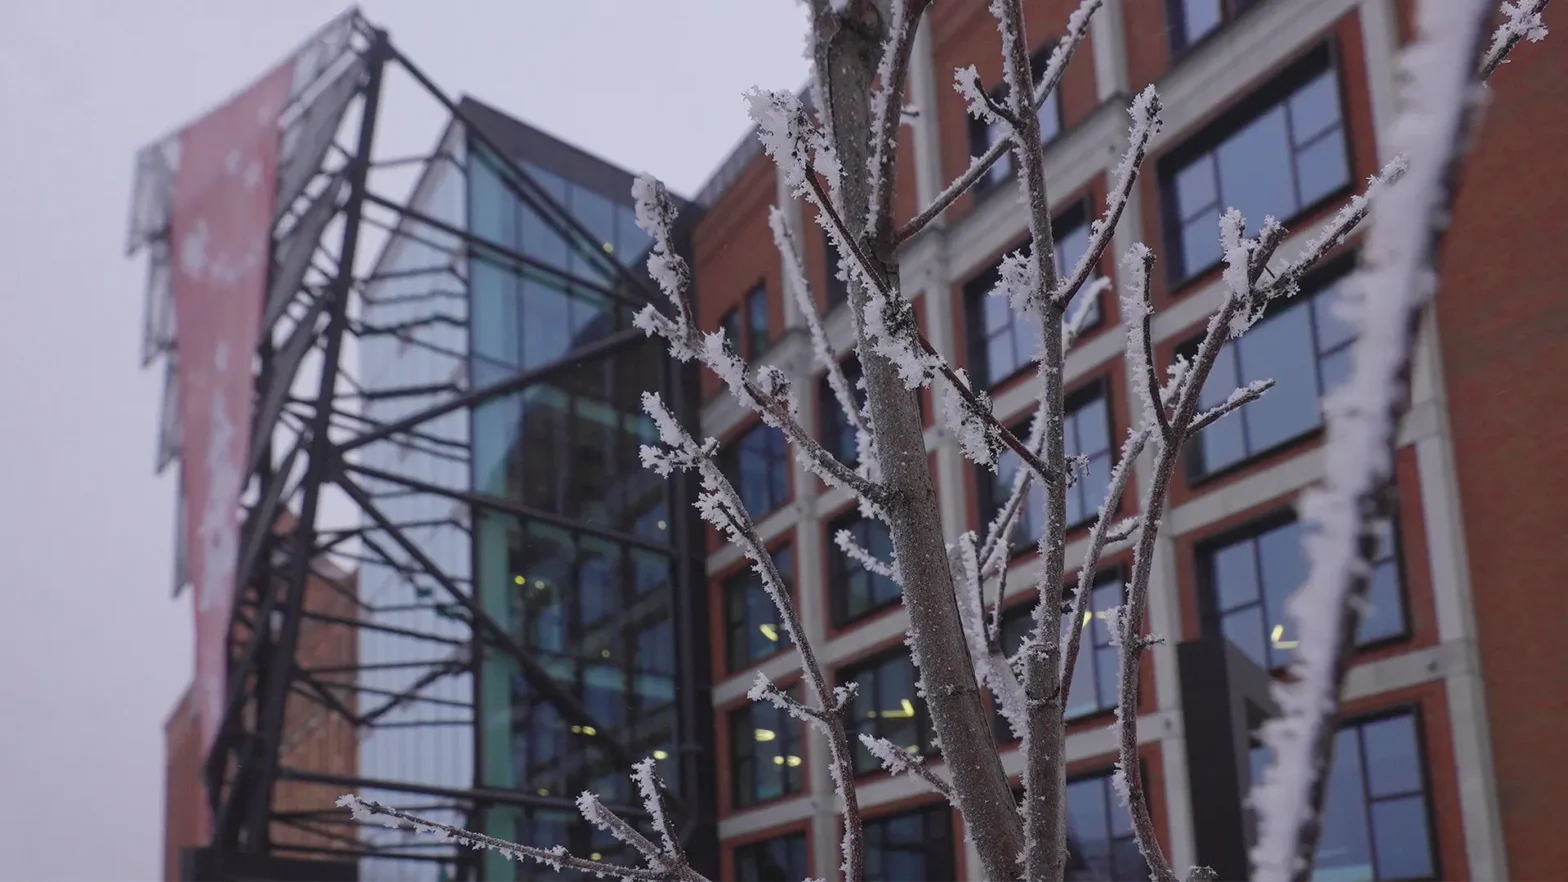 Budynek Wojewódzkiego Ośrodka Animacji Kultury w zimowej scenerii. Przed budynkiem widać łodygi drzewa, oprószonych śniegiem.